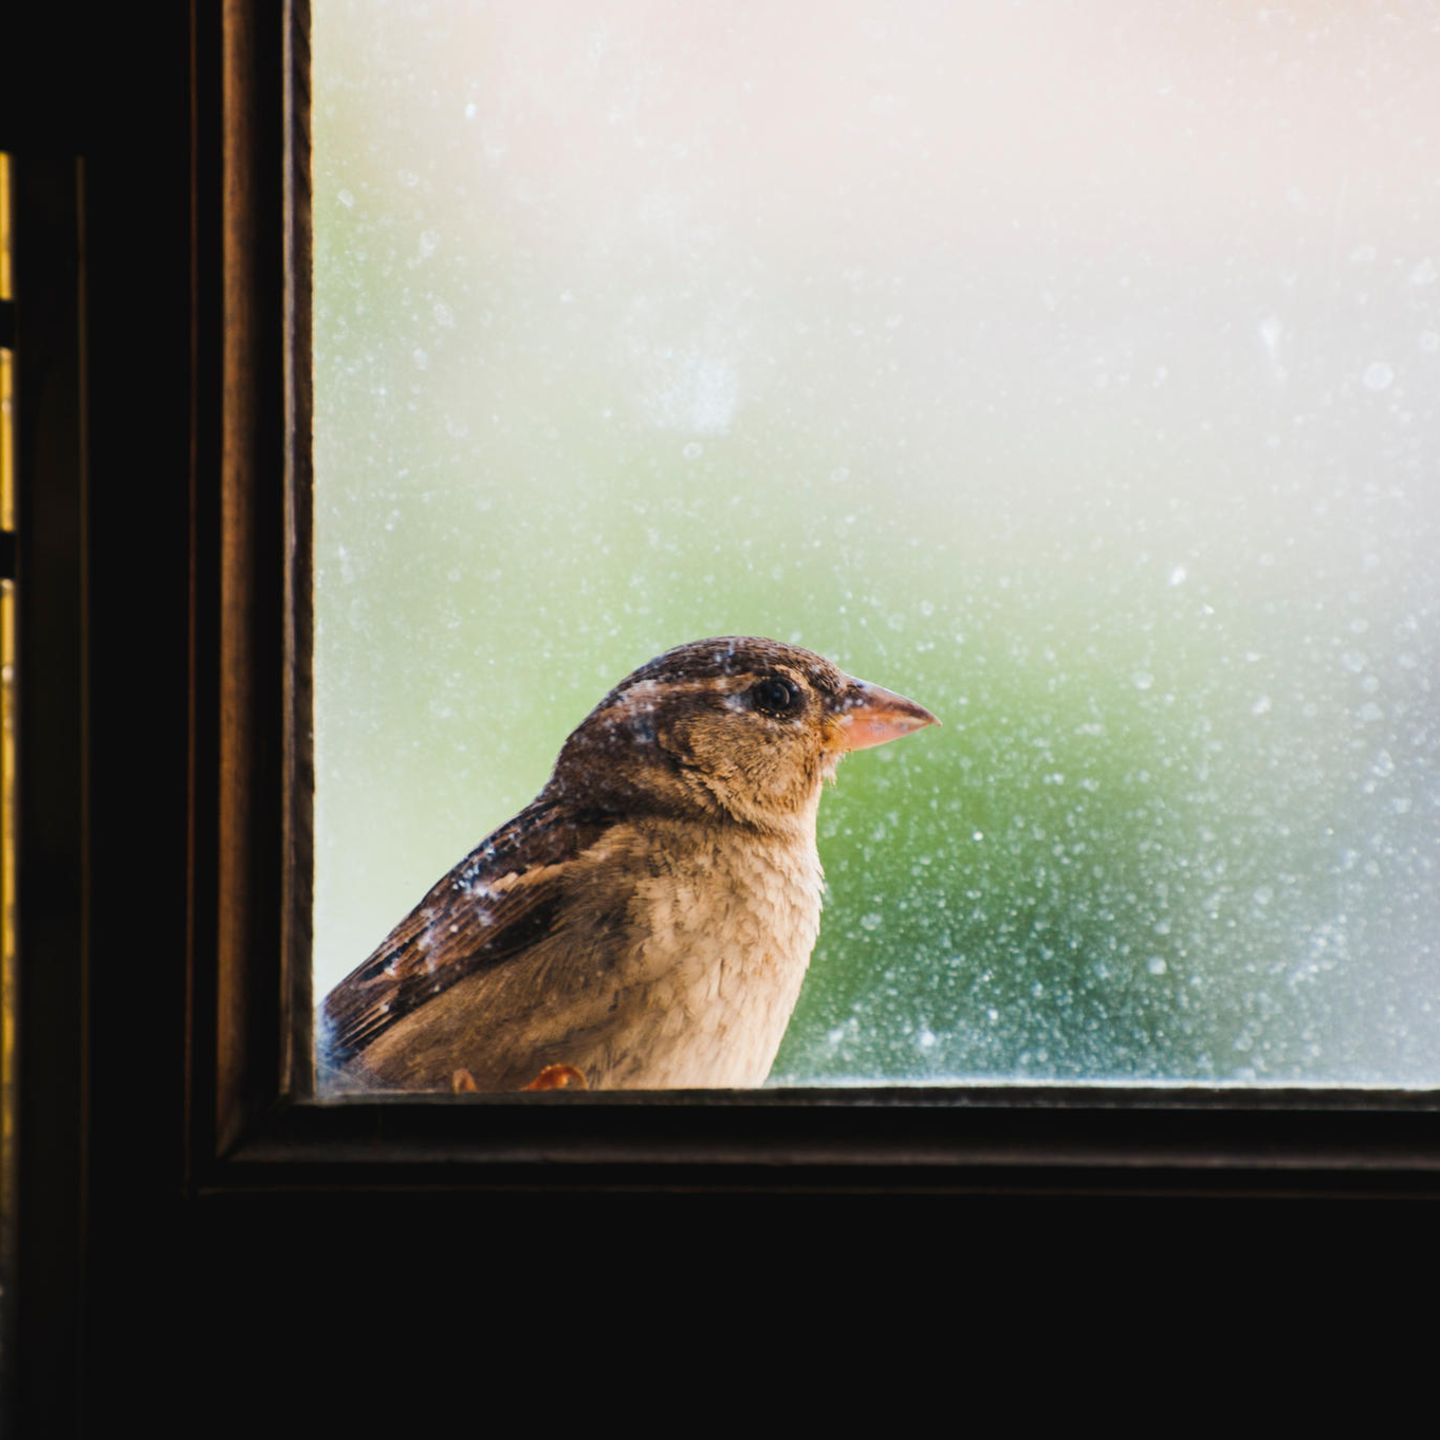 Vogel gegen Fensterscheibe geflogen: Das sollten Sie tun